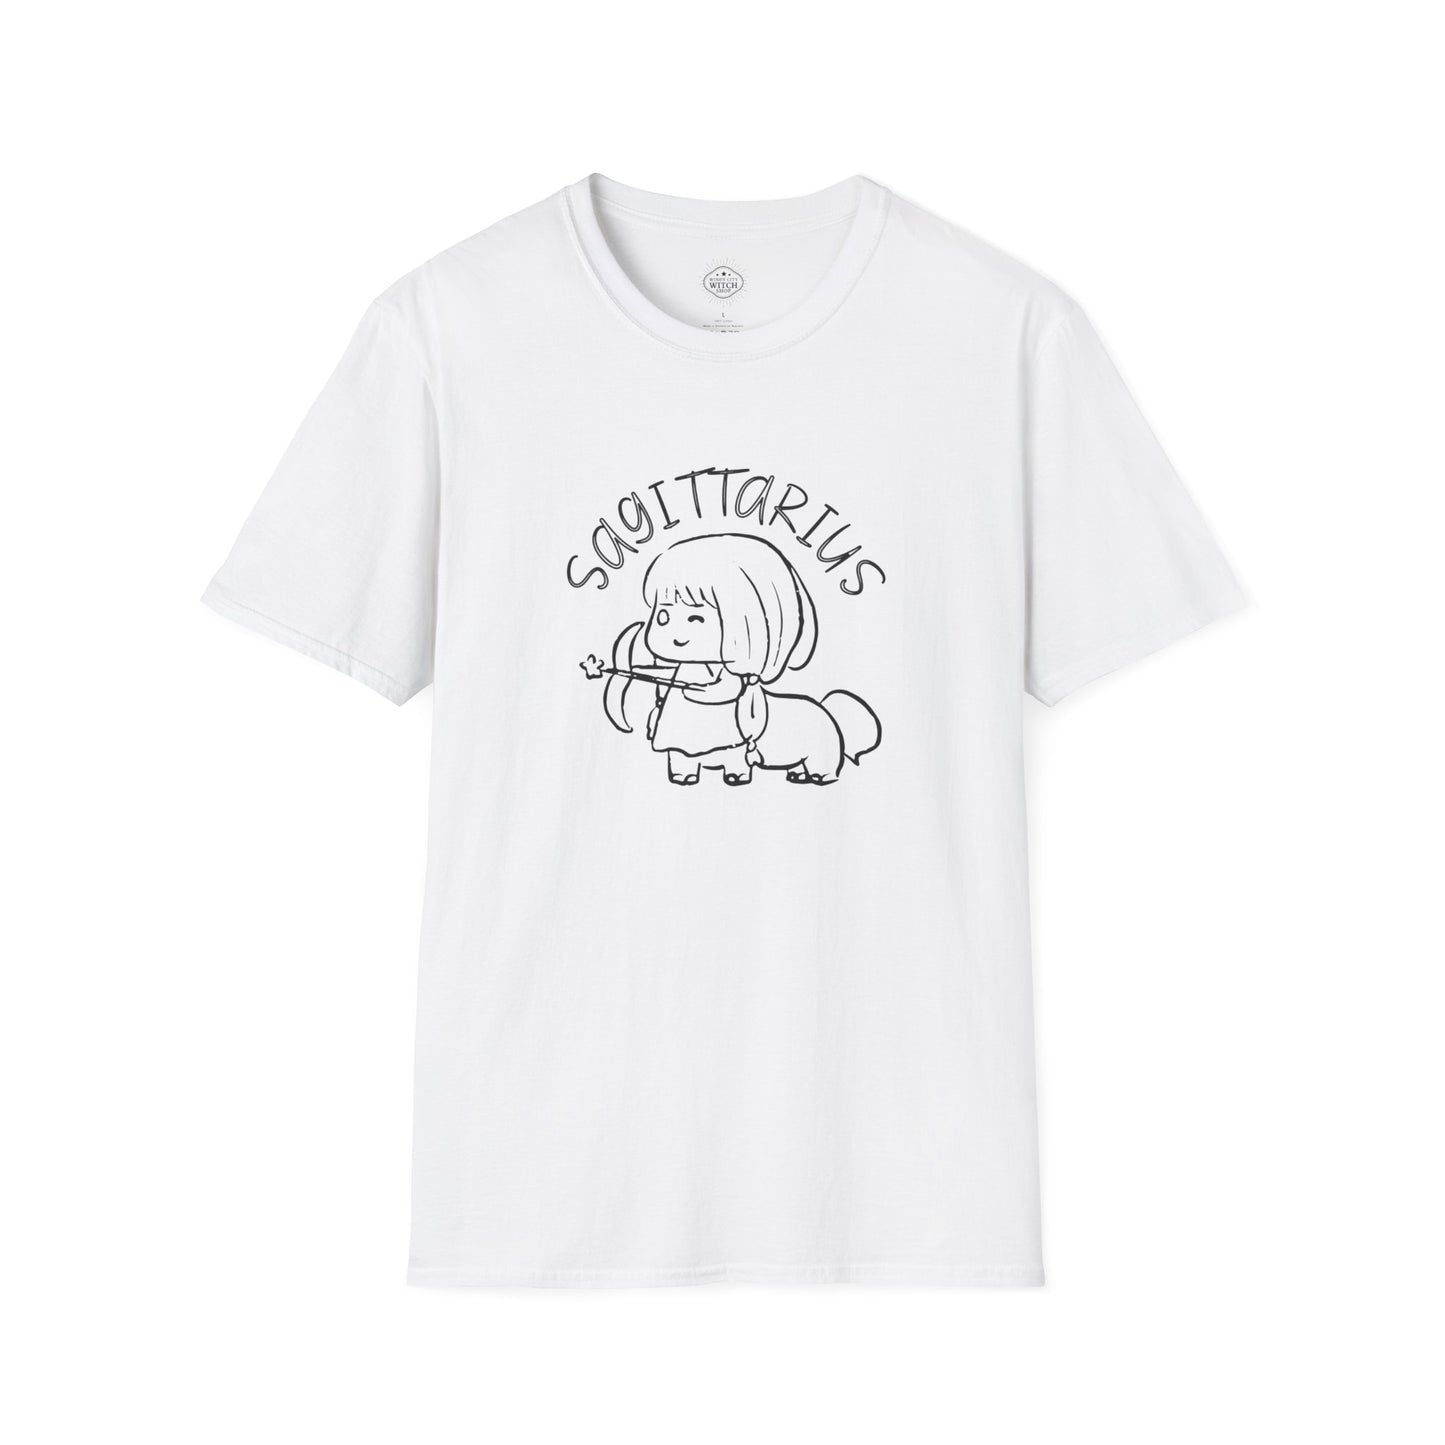 Cute Sagittarius T-Shirt